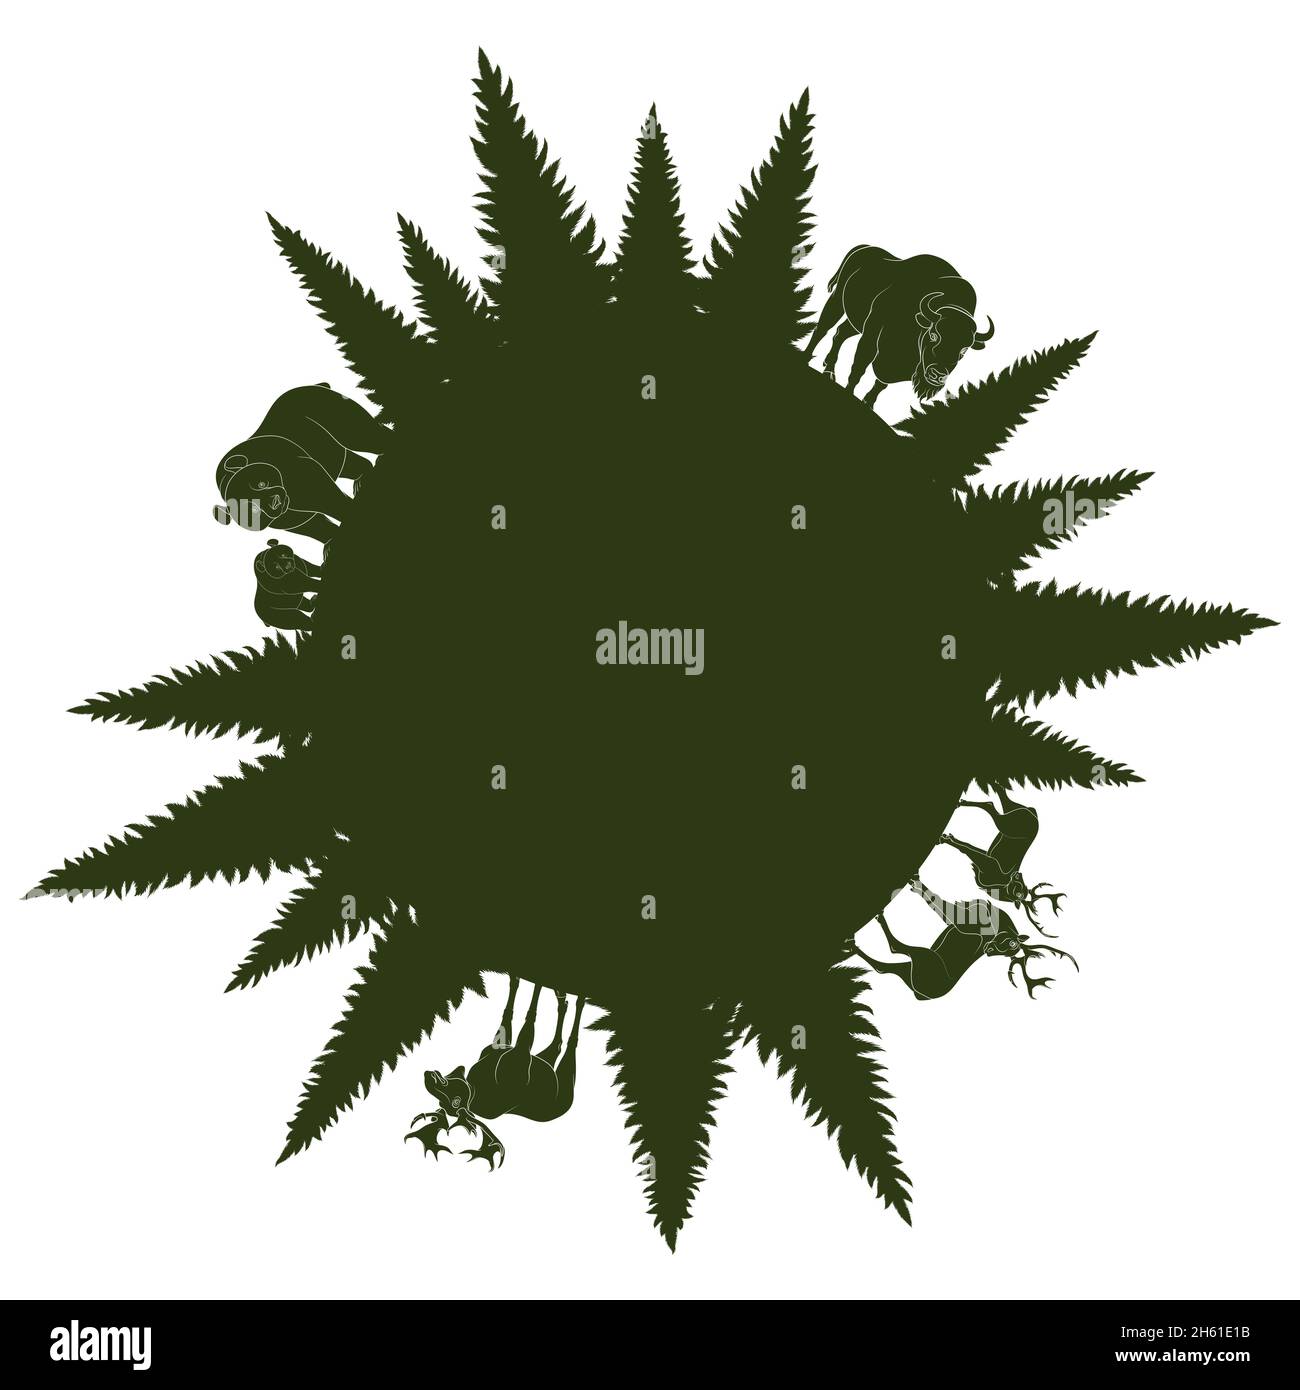 Silhouetten von wilden Waldtieren und Bäumen in einem Kreis angeordnet. Vektorgrafik. Stock Vektor